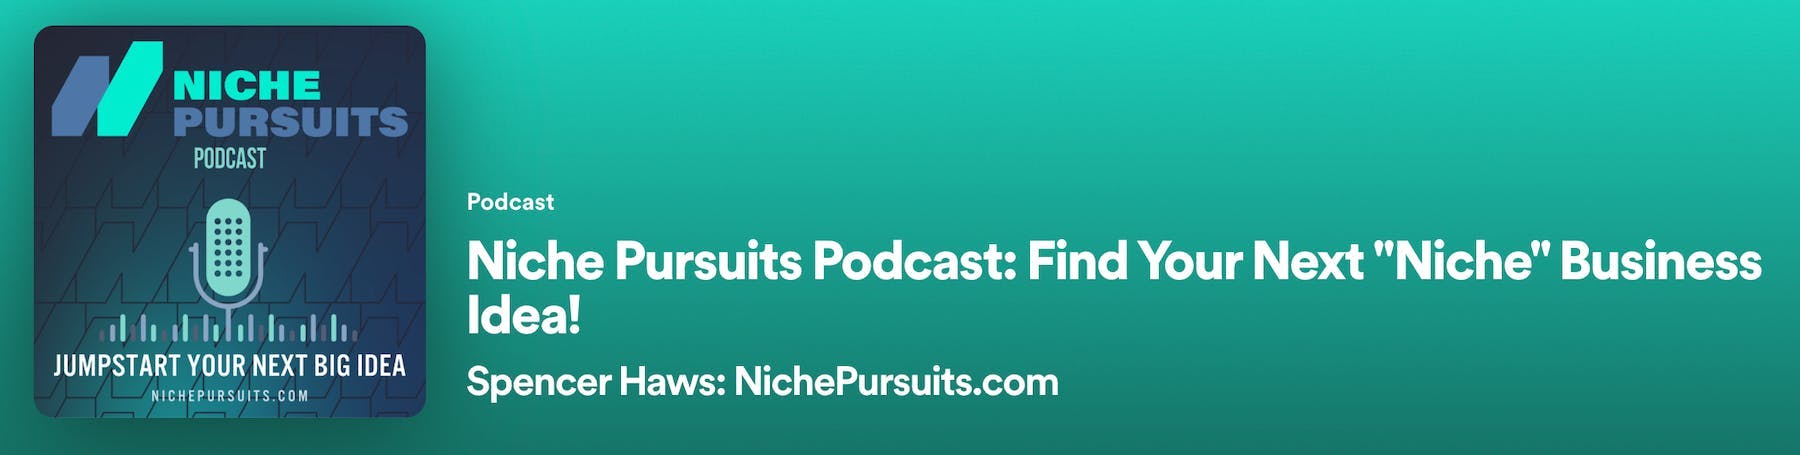 Niche pursuits podcast